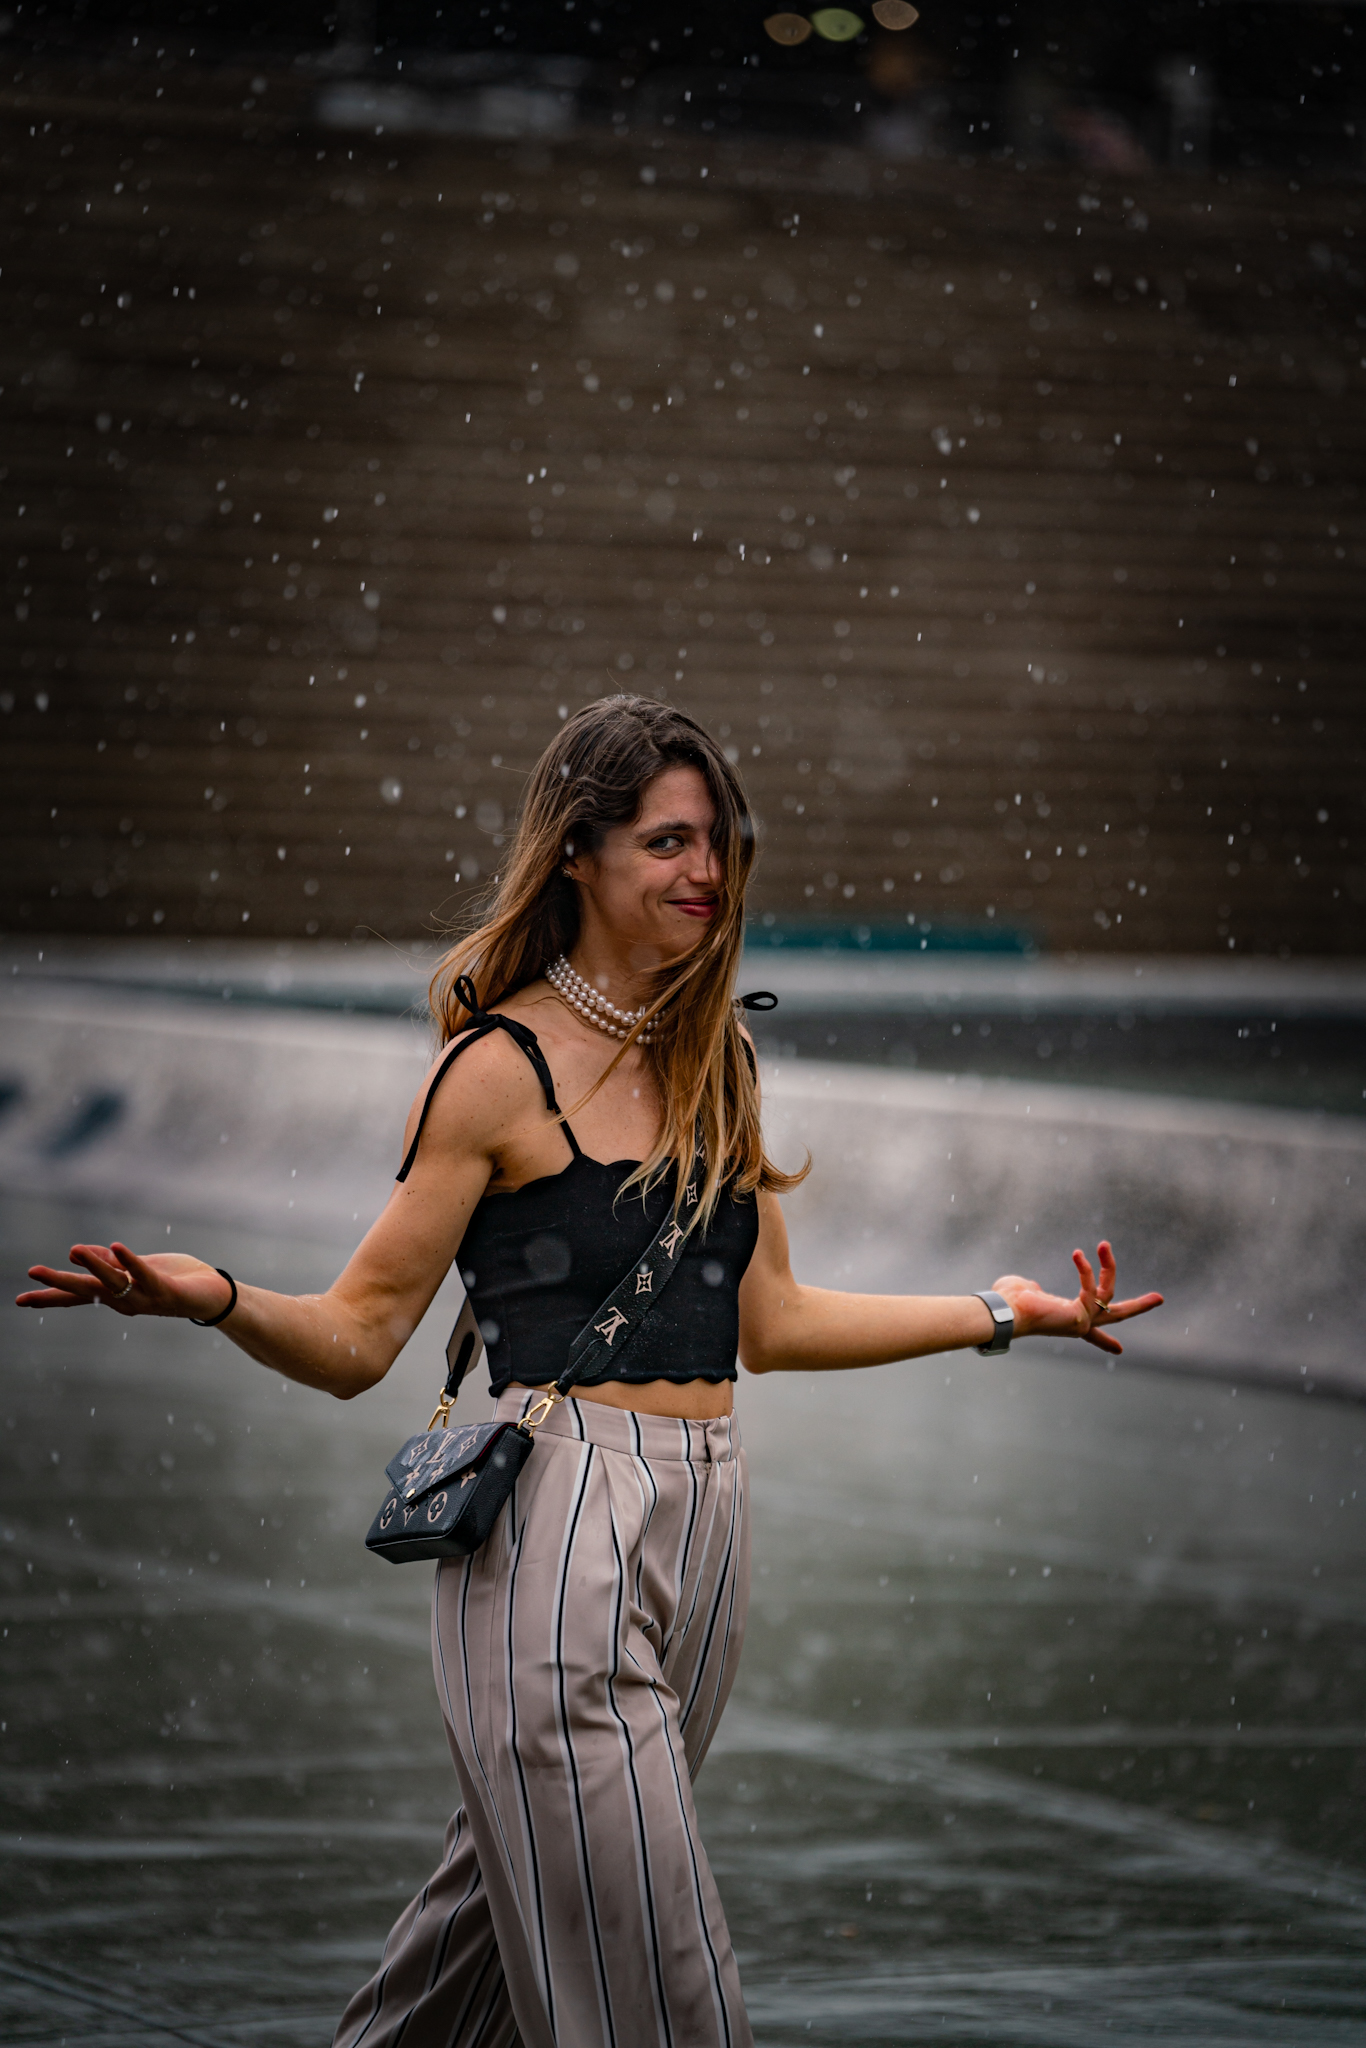 Pitti Uomo 104 - woman walking in rain